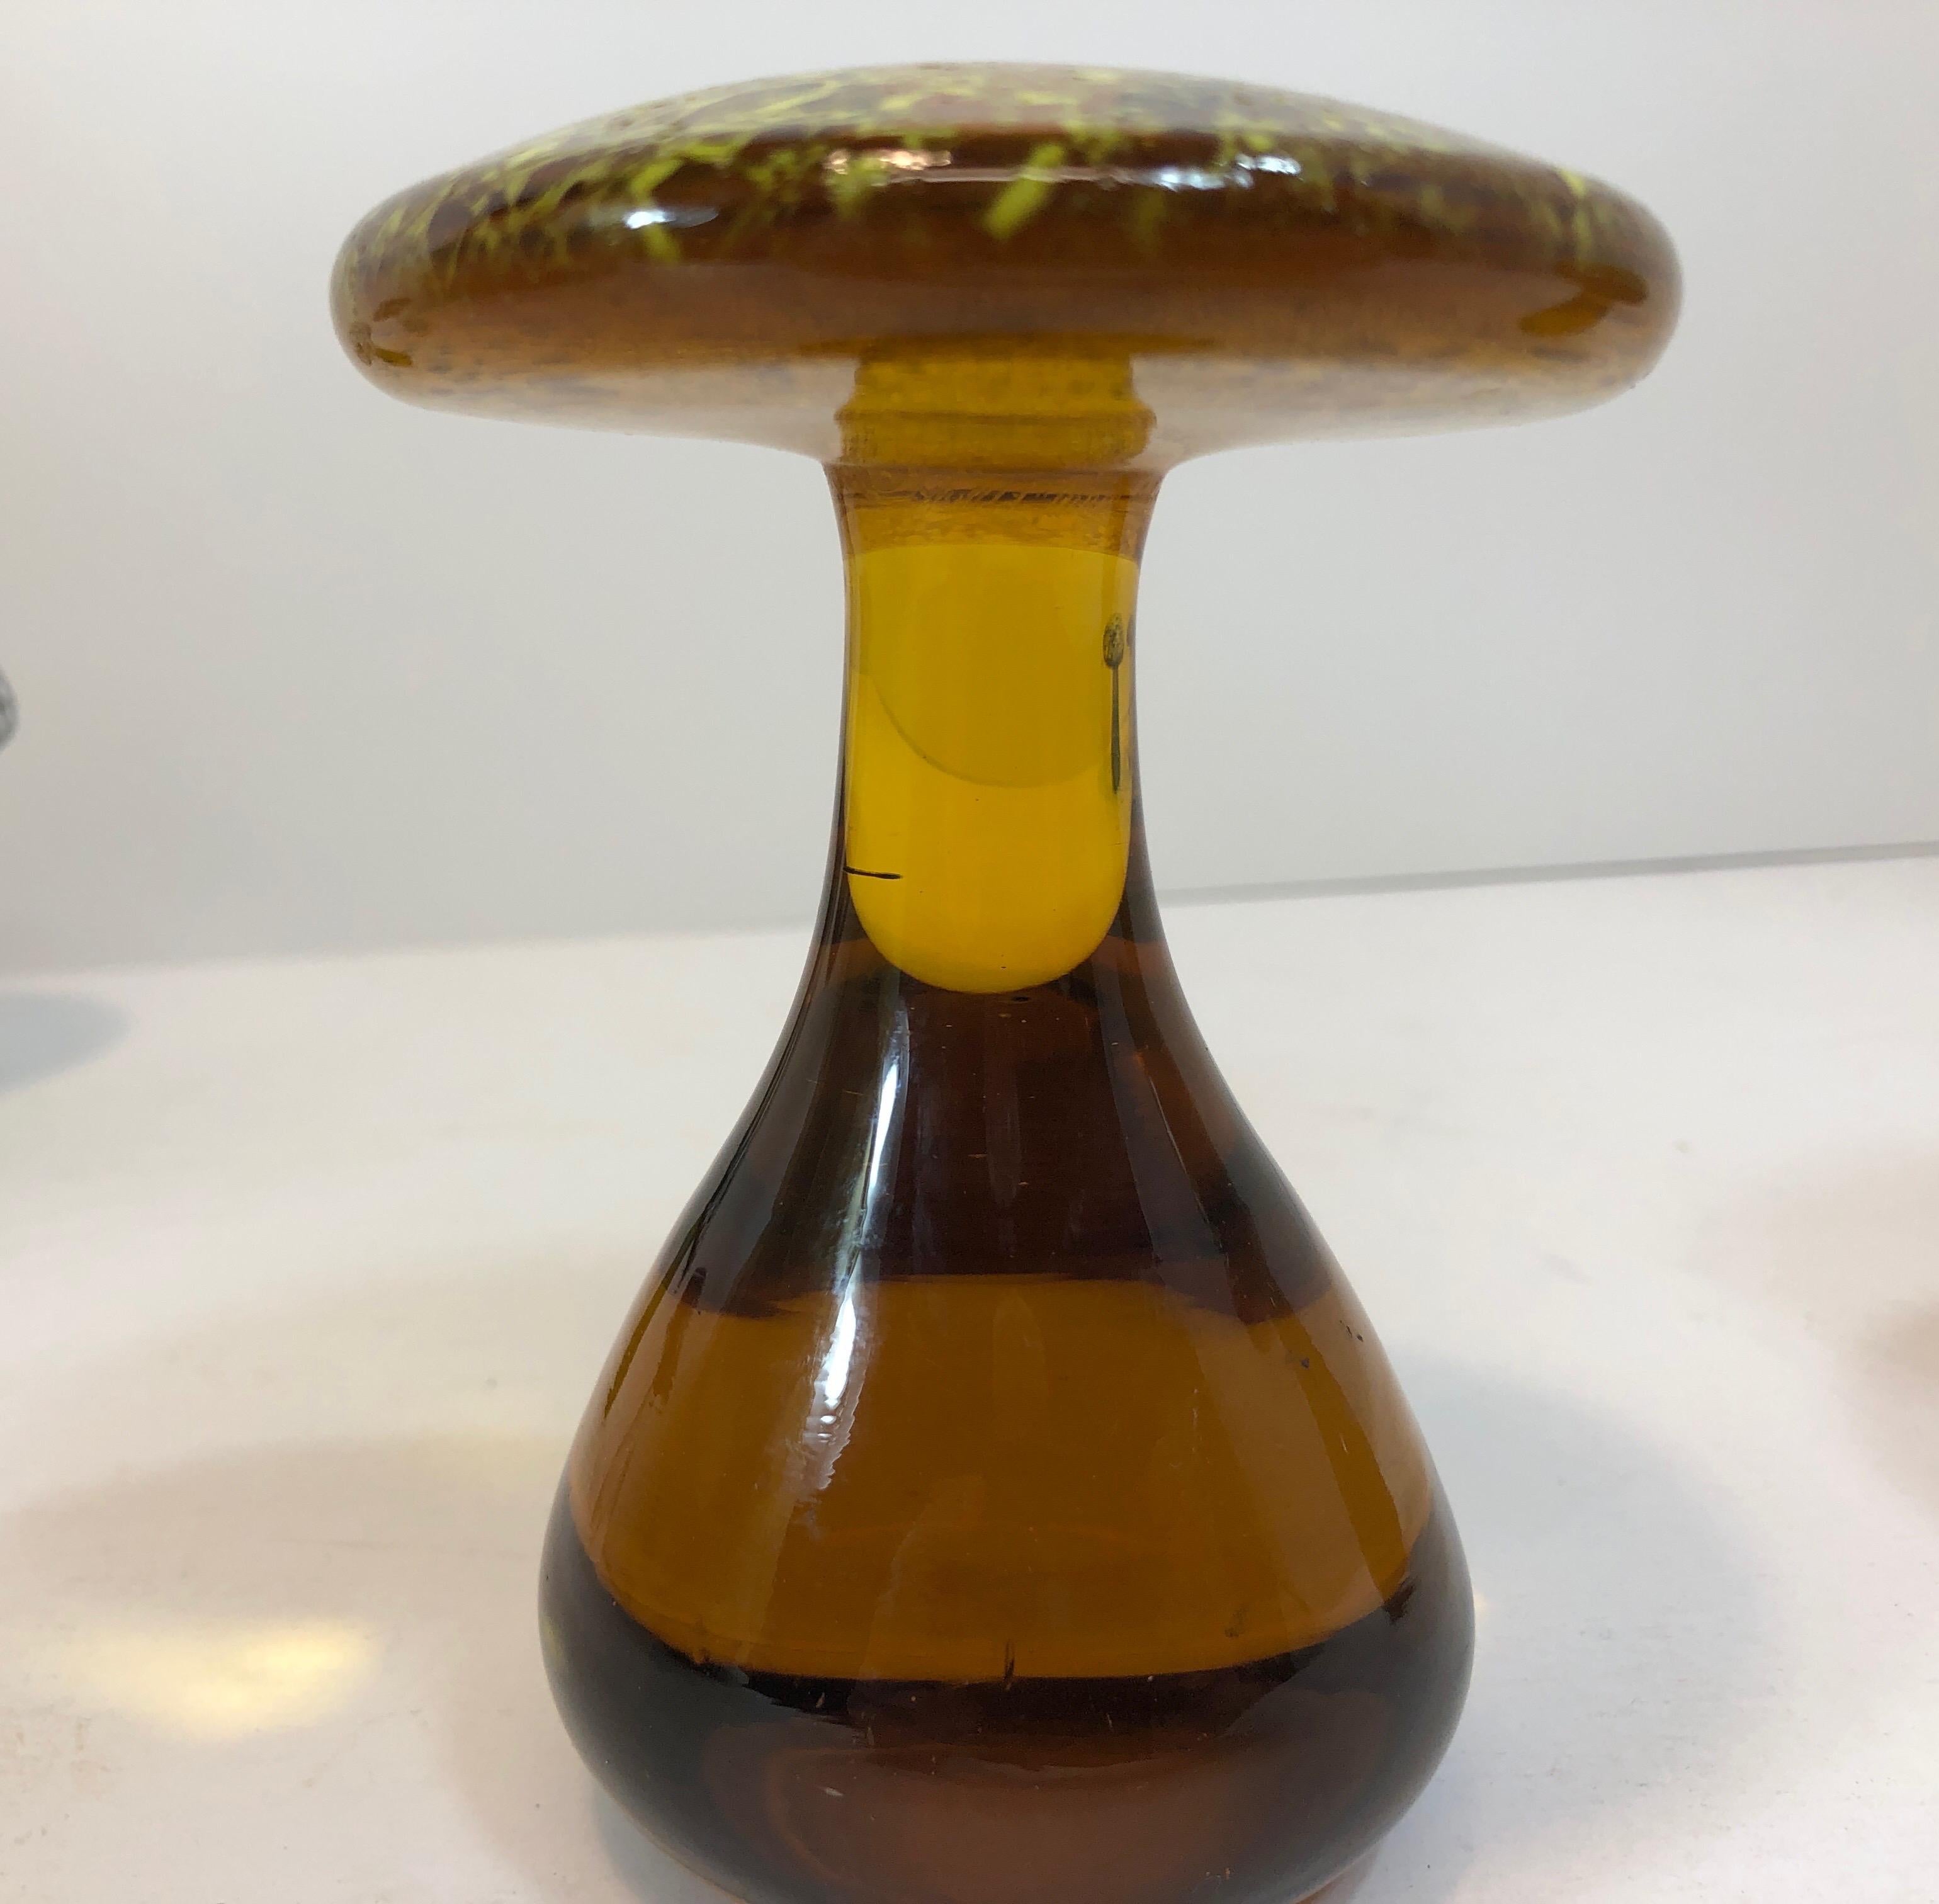 Pair of Murano Amber Italian Art Glass Mushroom Paperweight Sculpture 1